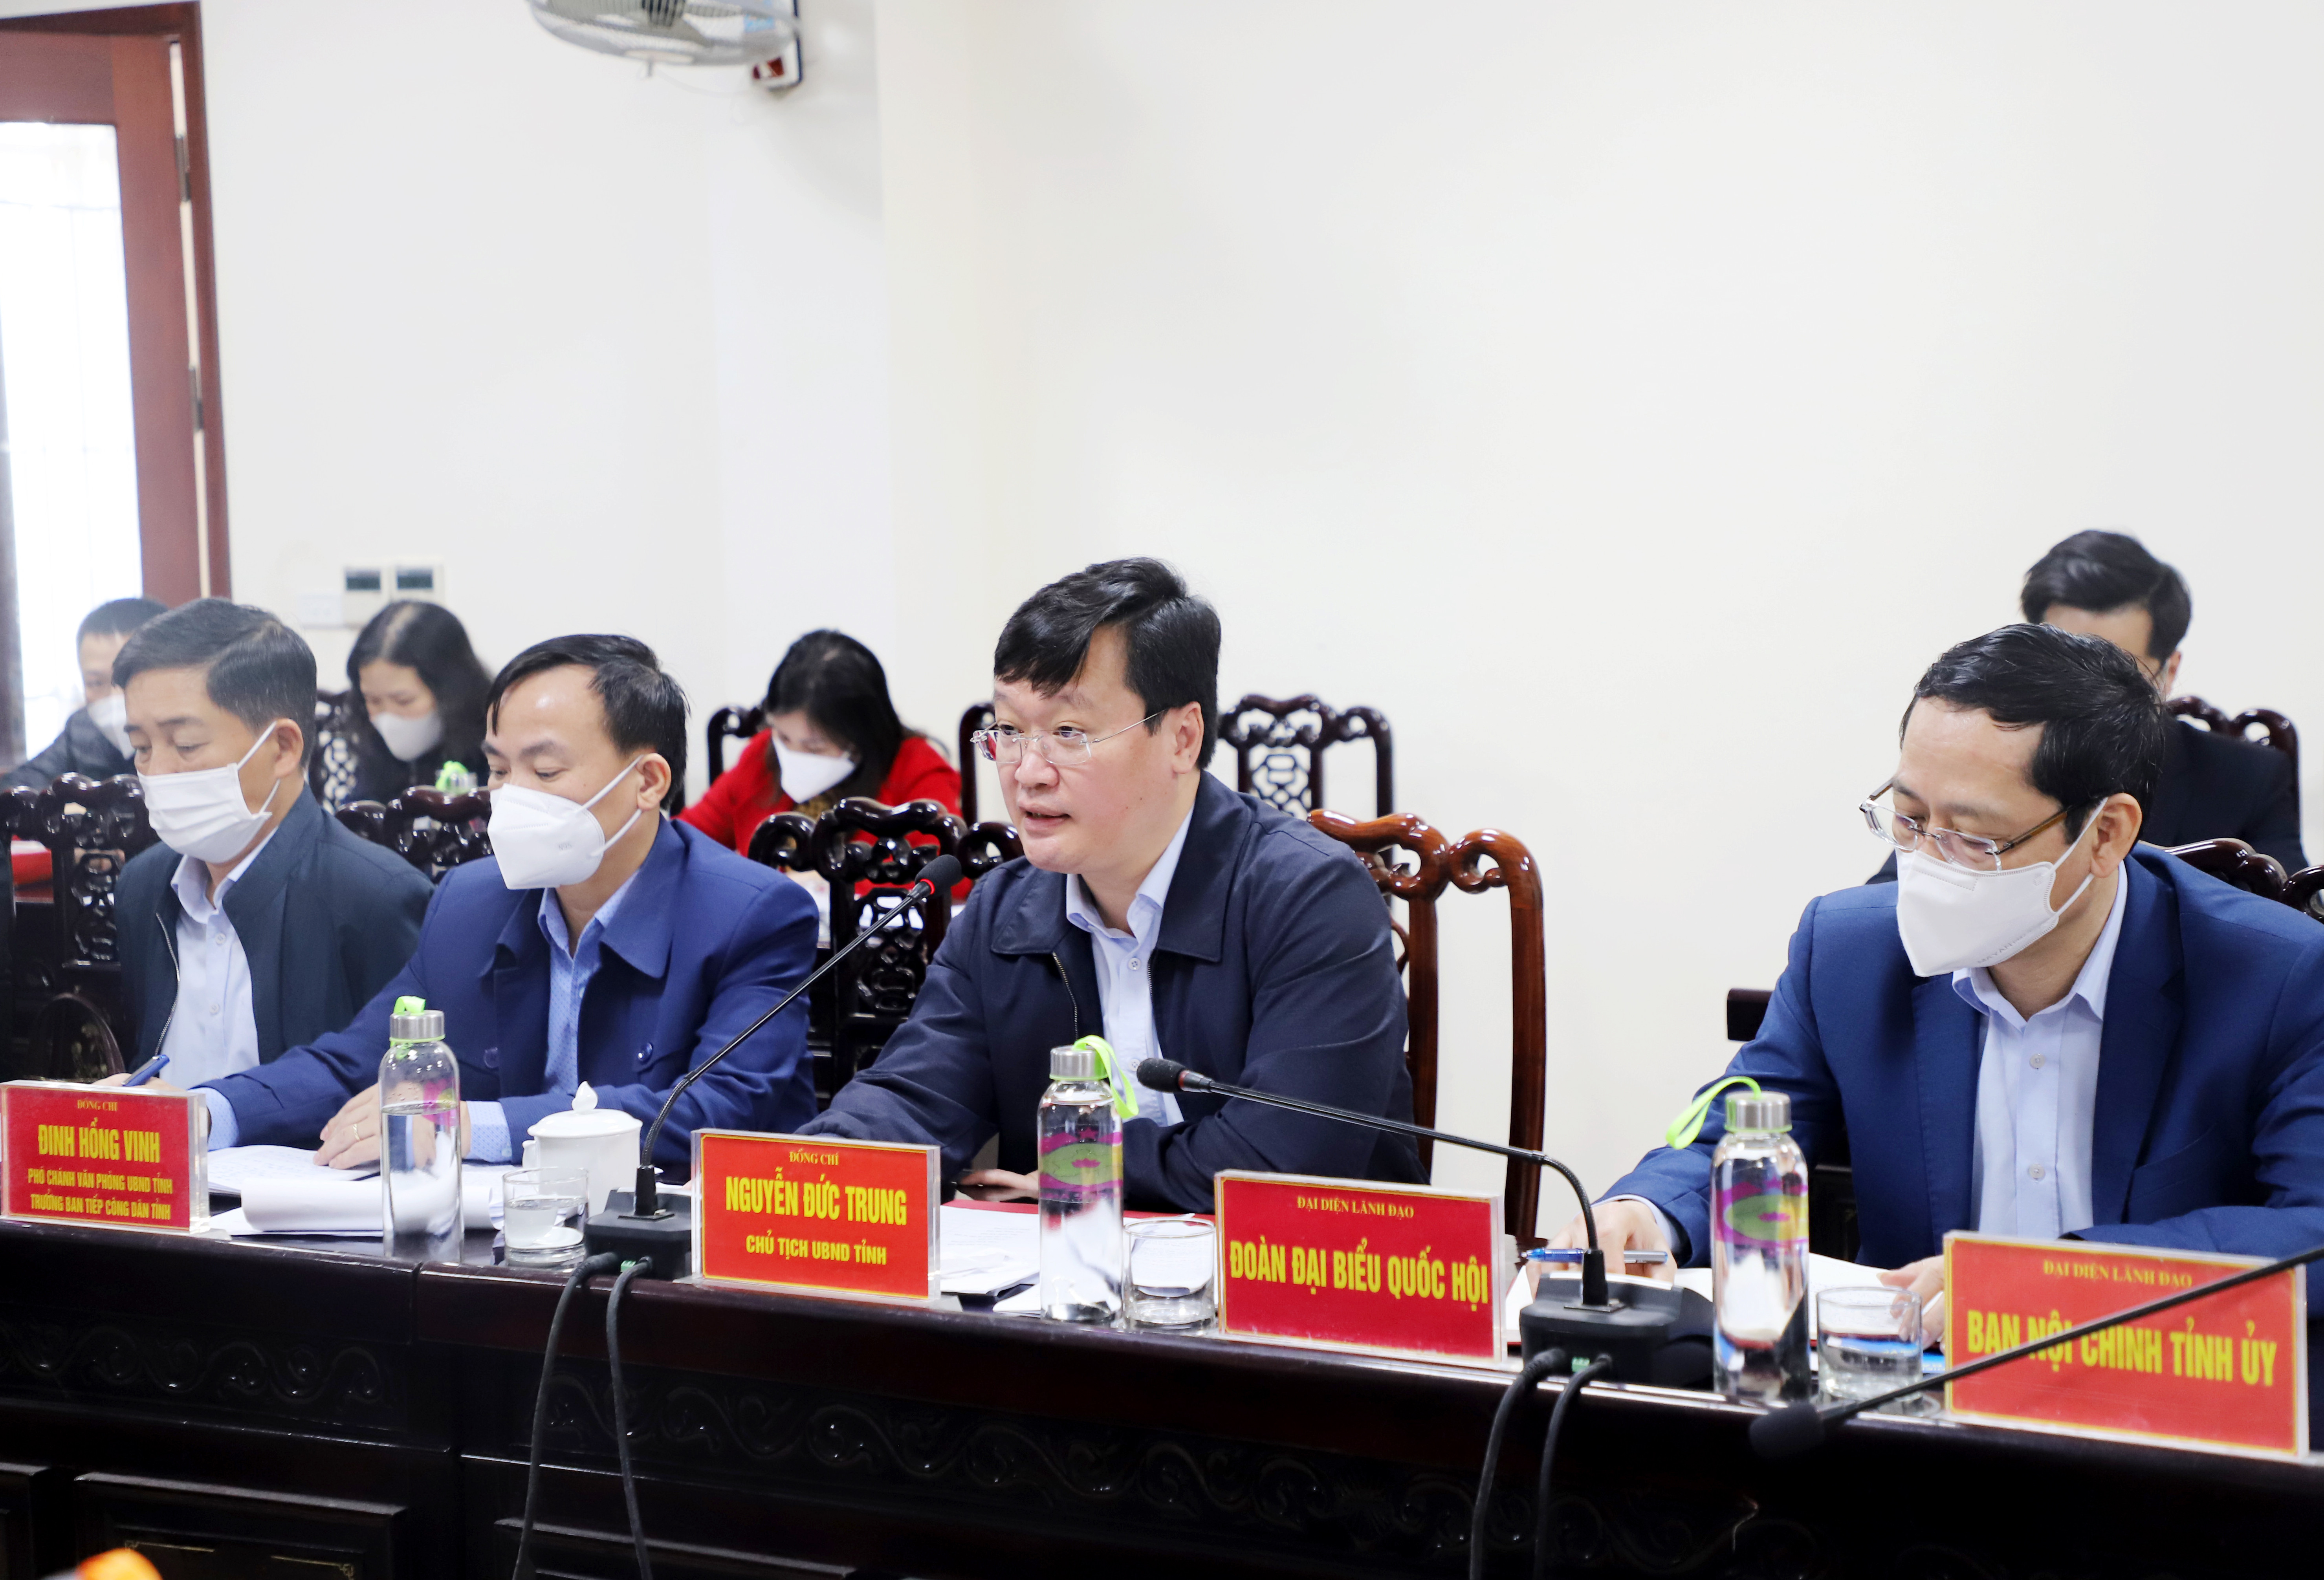 Đồng chí Nguyễn Đức Trung - Chủ tịch UBND tỉnh kết luận hướng giải quyết vụ việc. Ảnh: Phạm Bằng